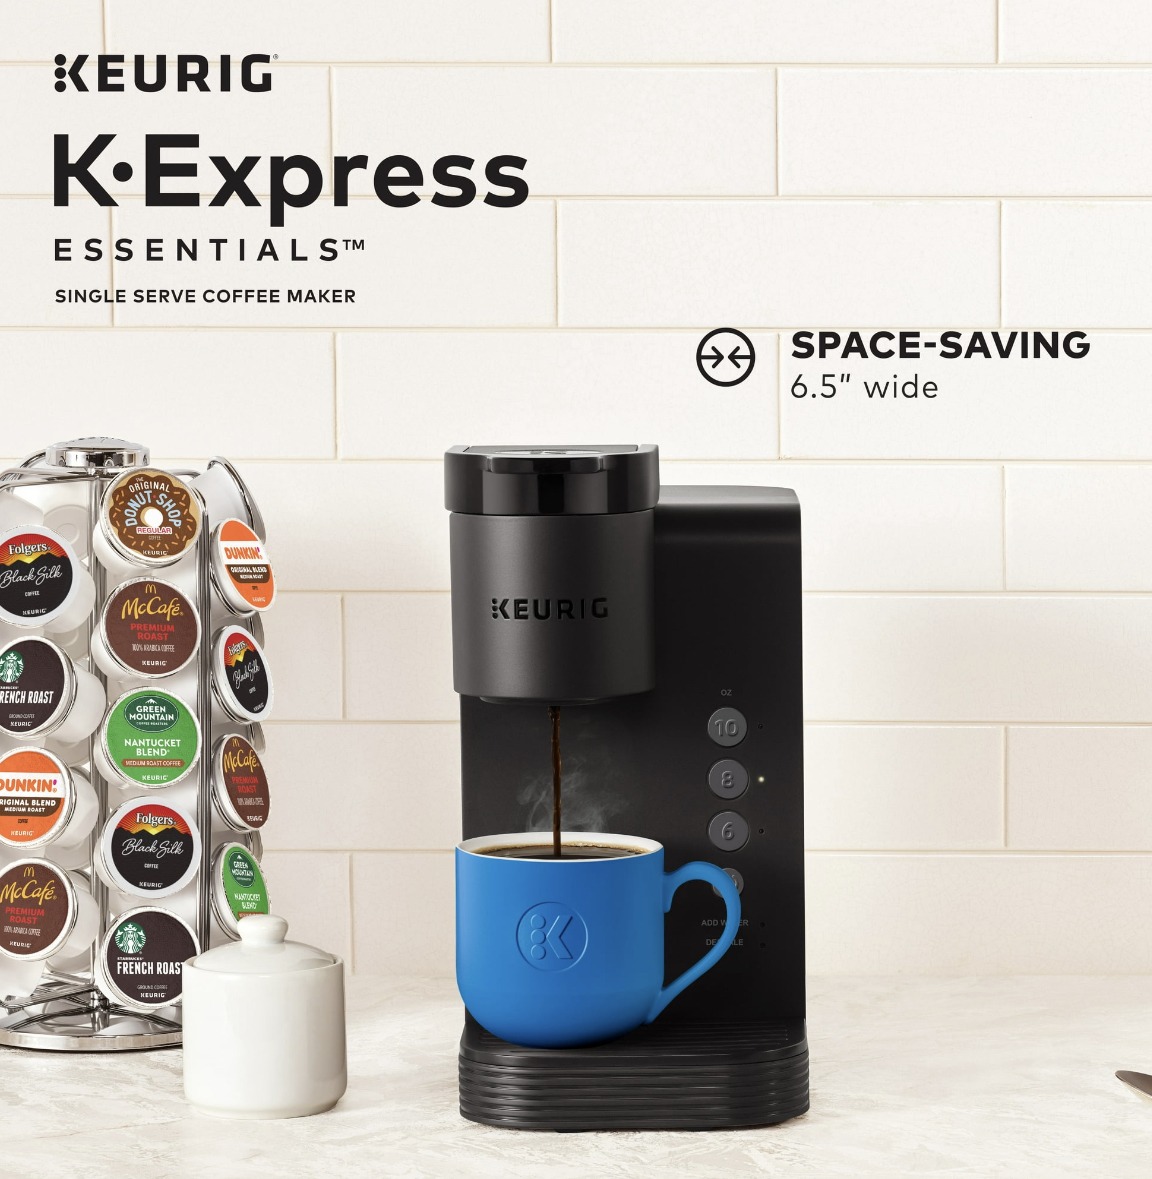 Keurig K-Mini Single Serve Coffee Maker in Black